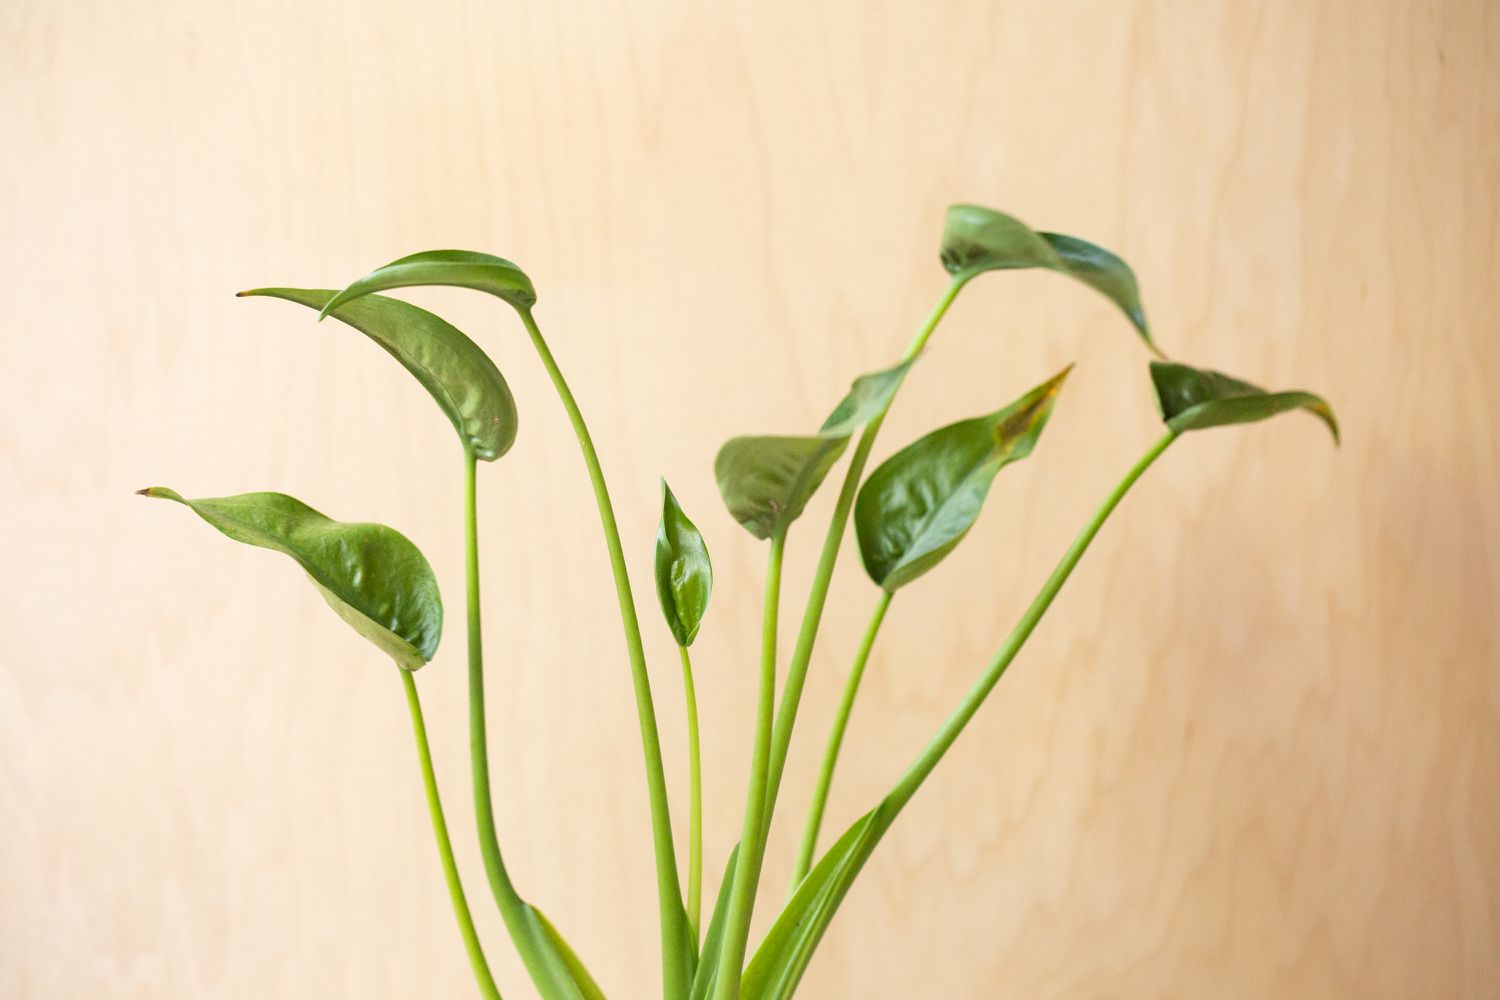 Alocasia tuny dancer planta com caules longos e folhas pontiagudas em forma de xícara